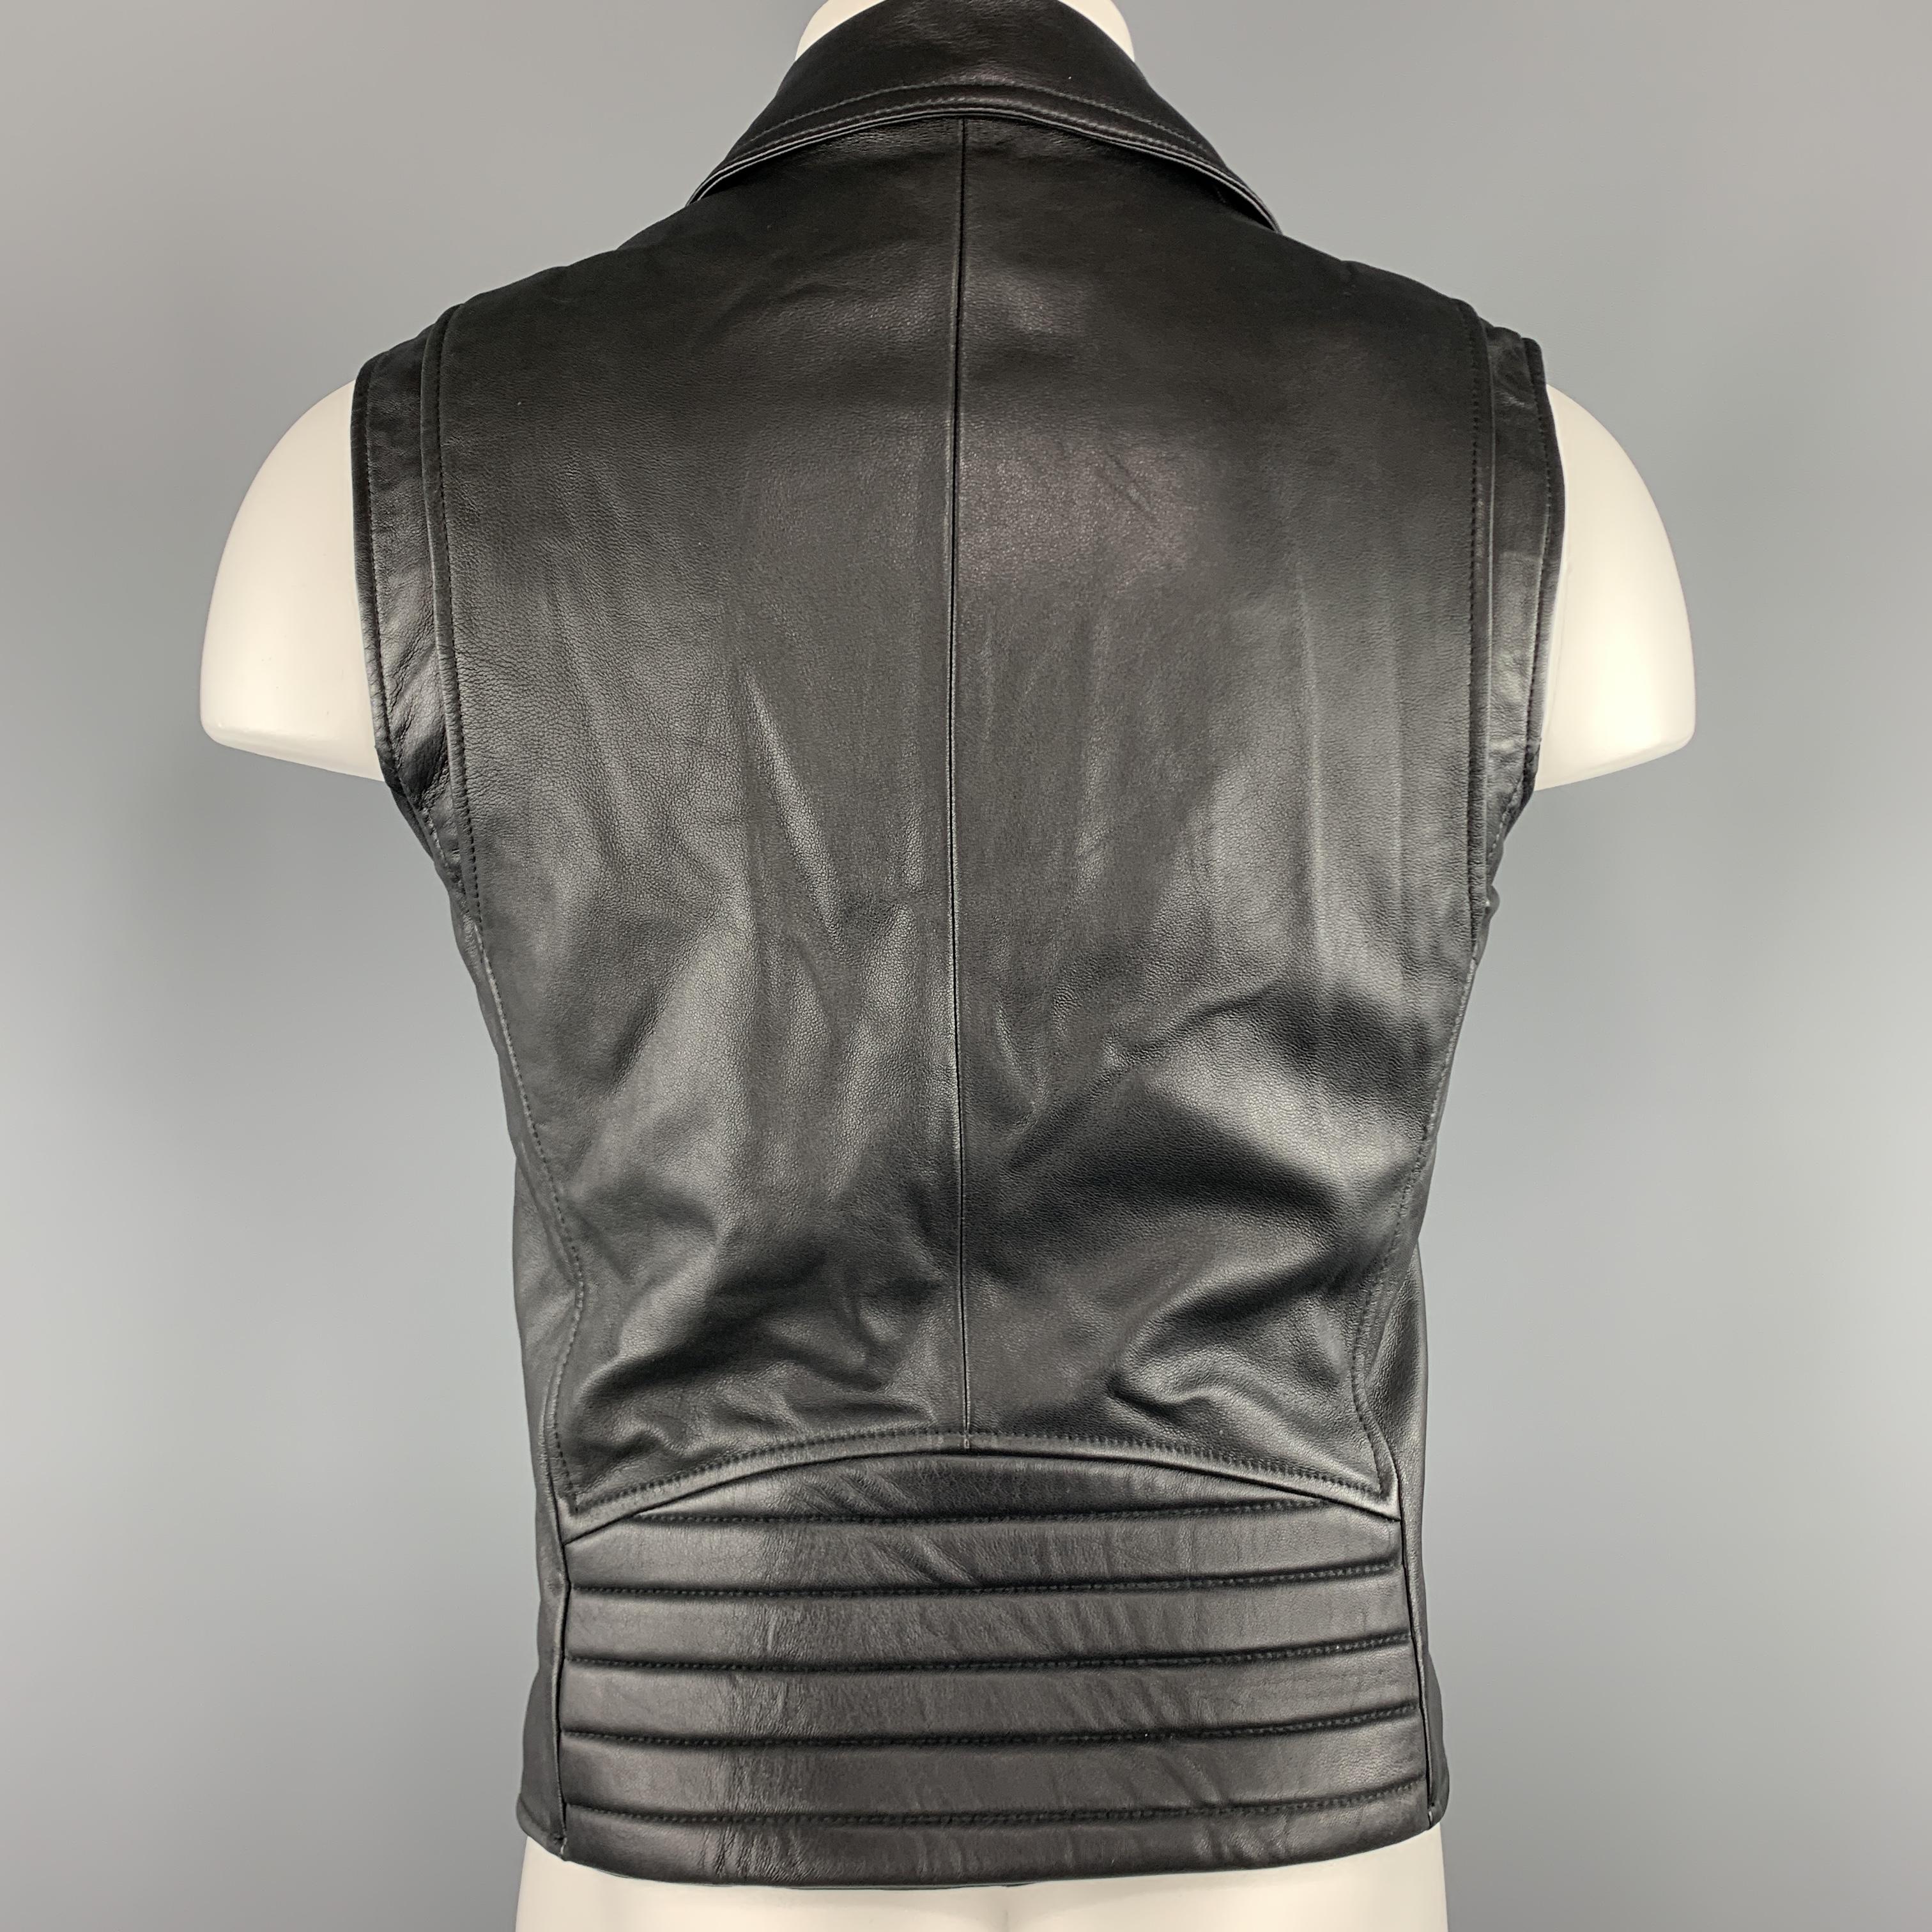 VERSUS by GIANNI VERSACE Size 36 Black Leather Lion Head Biker Vest 3